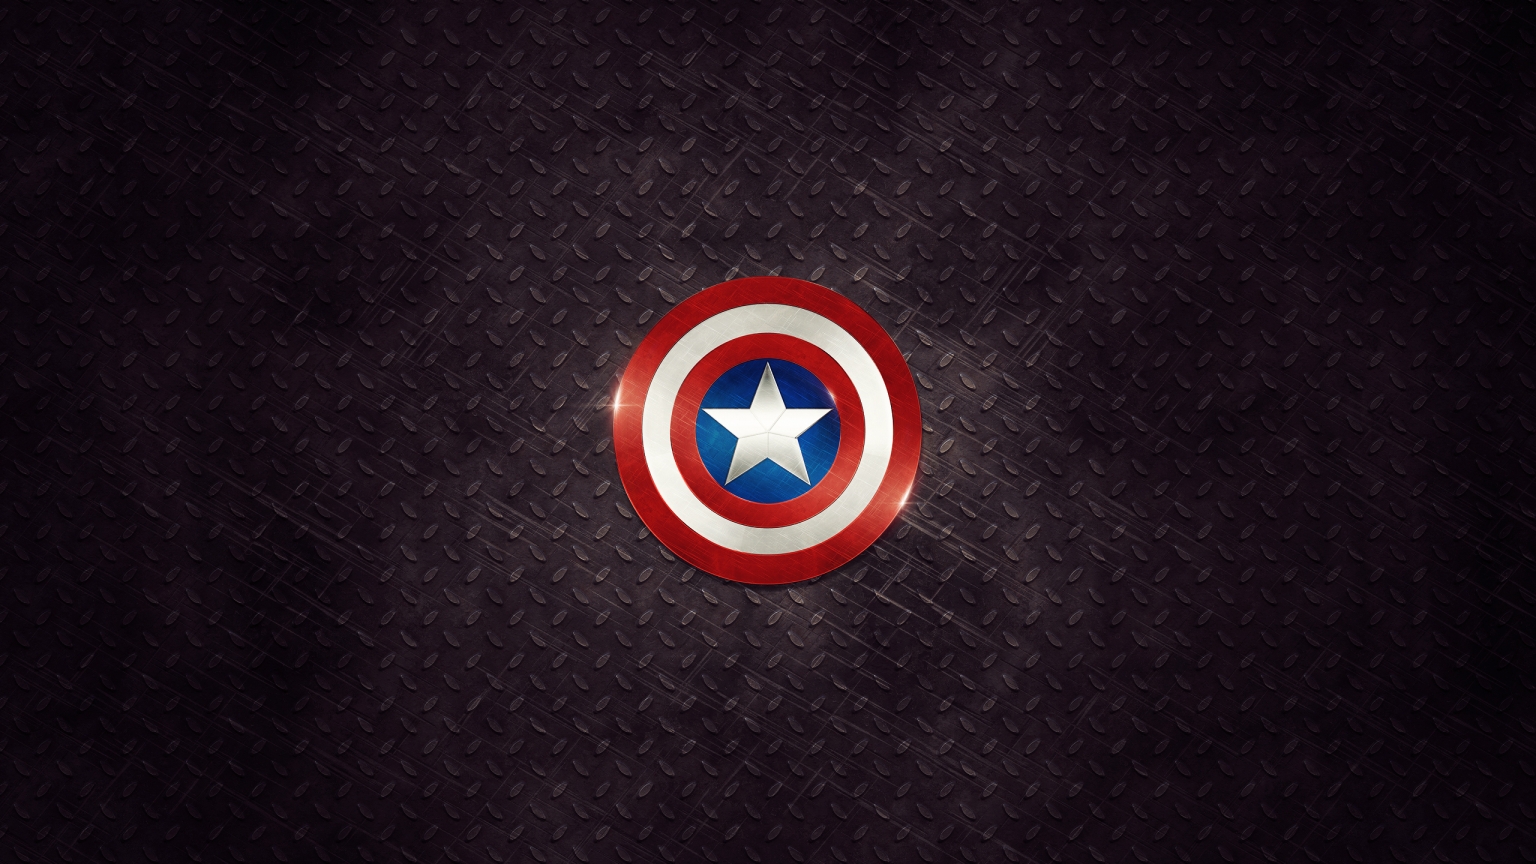 Captain America Logo for 1536 x 864 HDTV resolution